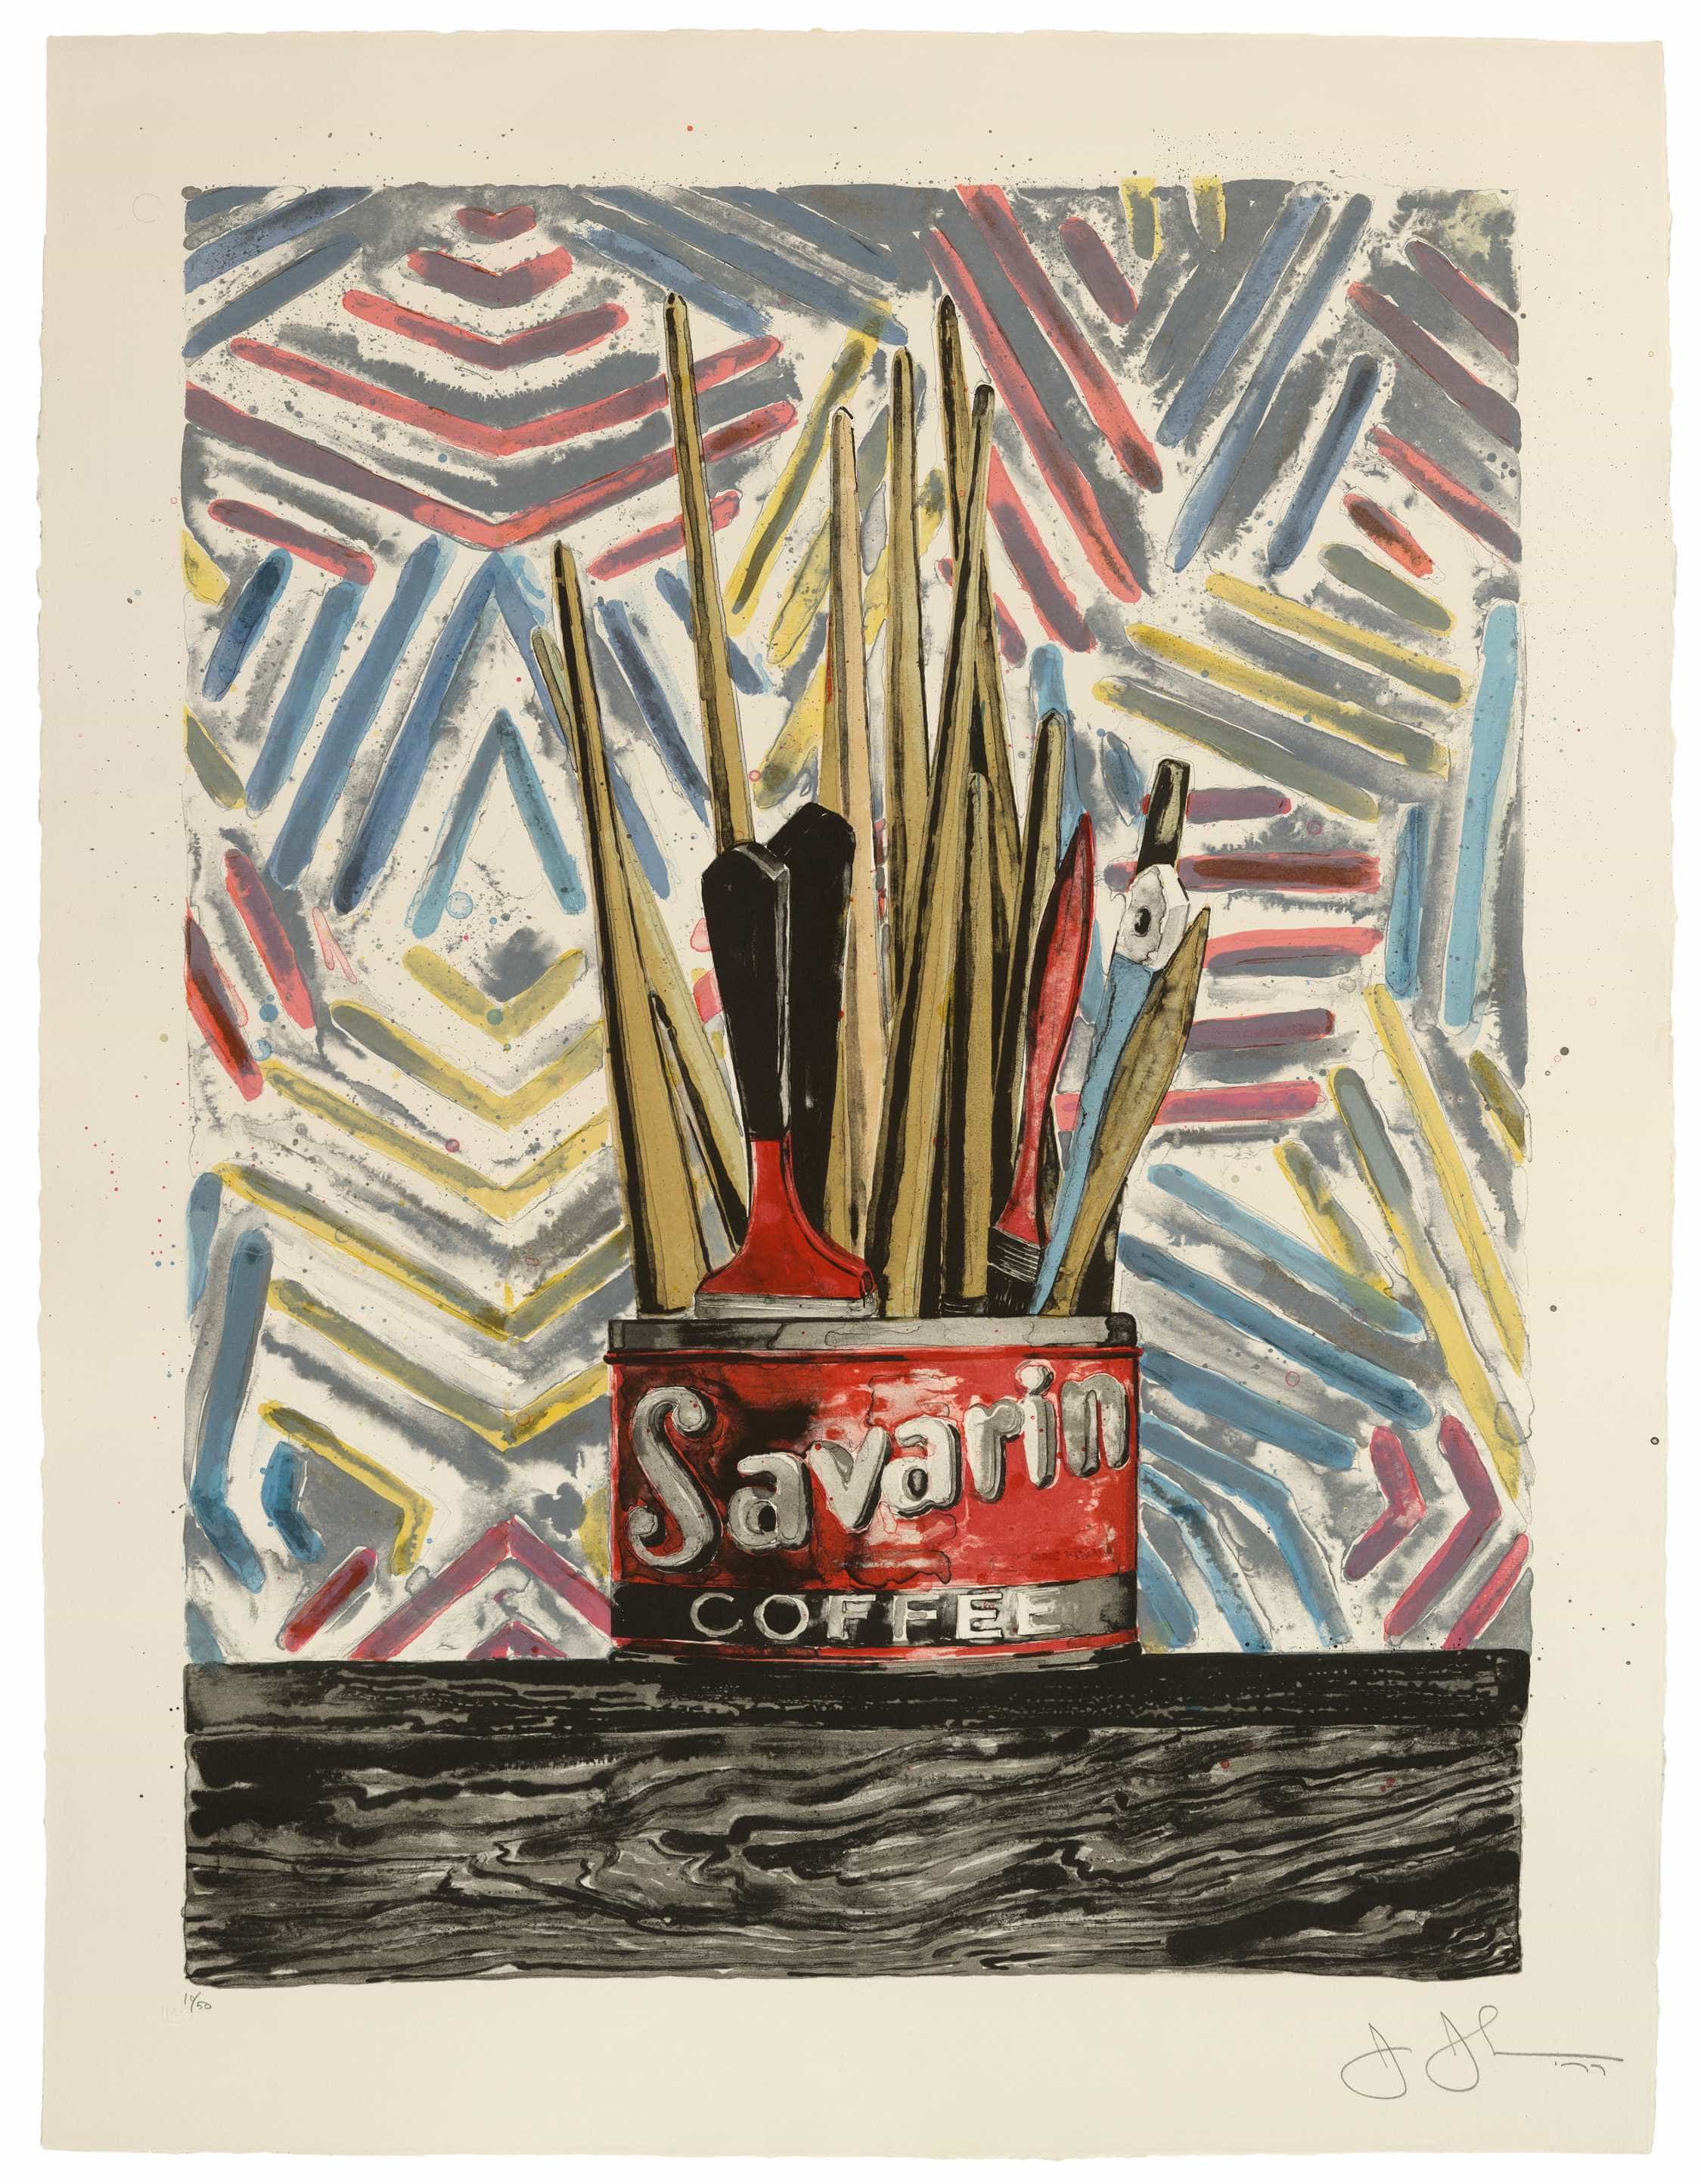 Jasper Johns, Savarin, 1977